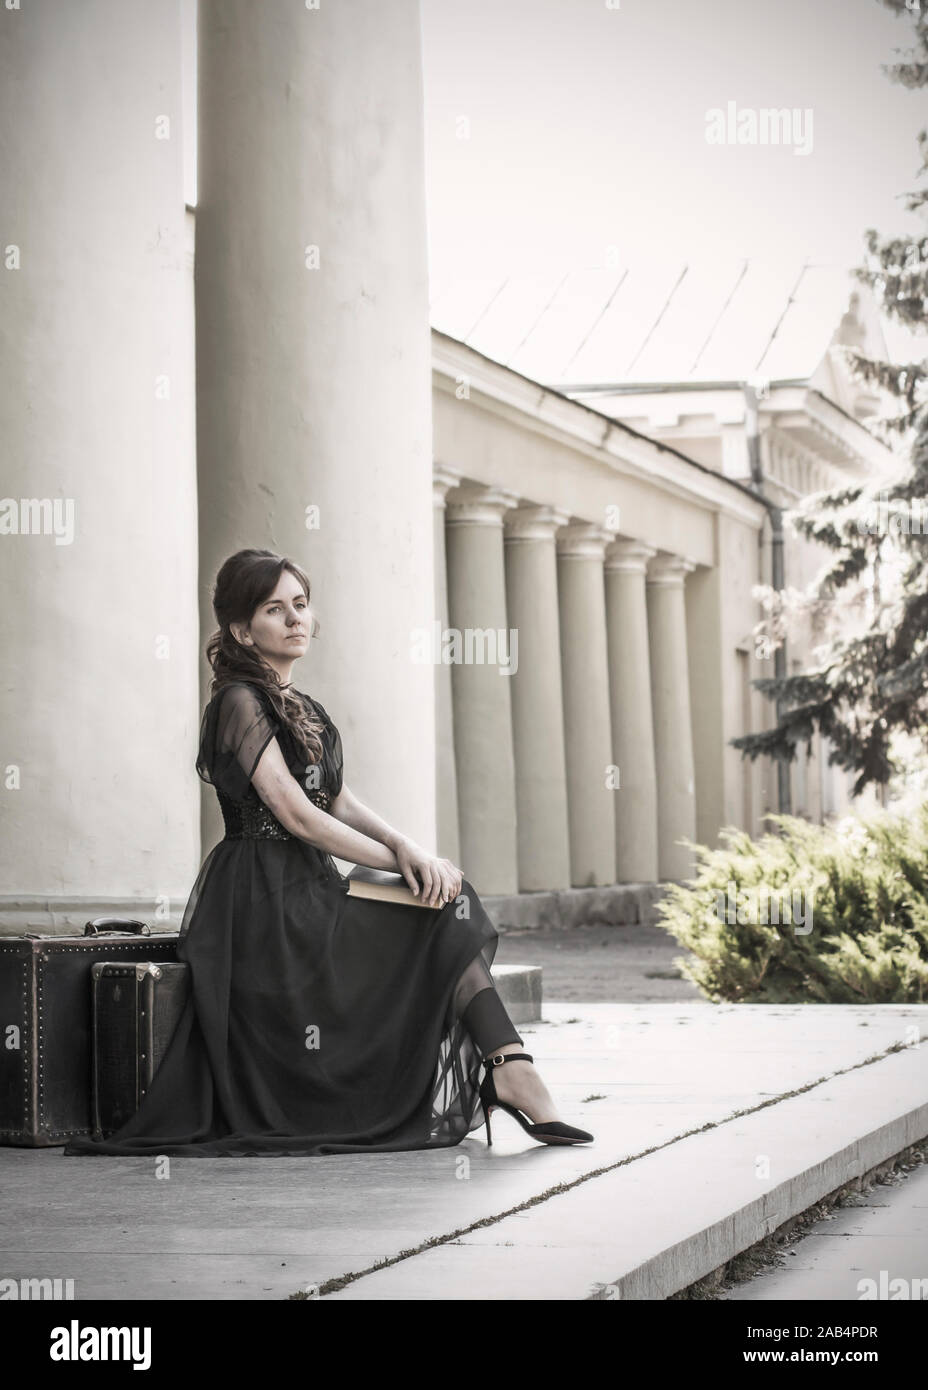 Schöne Mädchen in einem schwarzen Abendkleid sitzt mit einem Buch. Ein Mädchen sitzt mit Koffern in der Nähe ein altes Gebäude mit Säulen. Schöne Frau mit Narben. Re Stockfoto